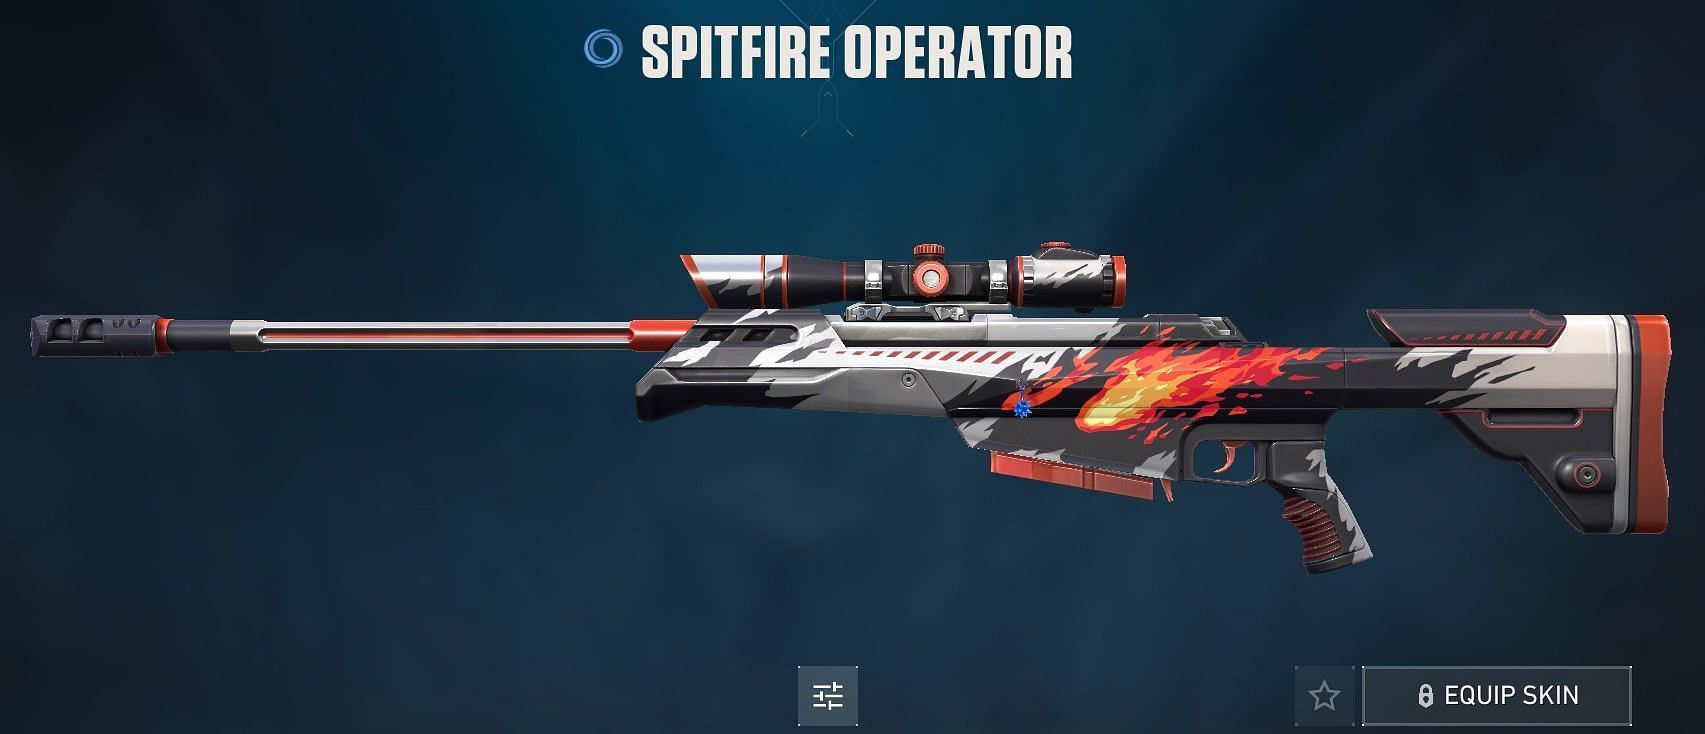 Spitfire Operator (Image via Riot Games)